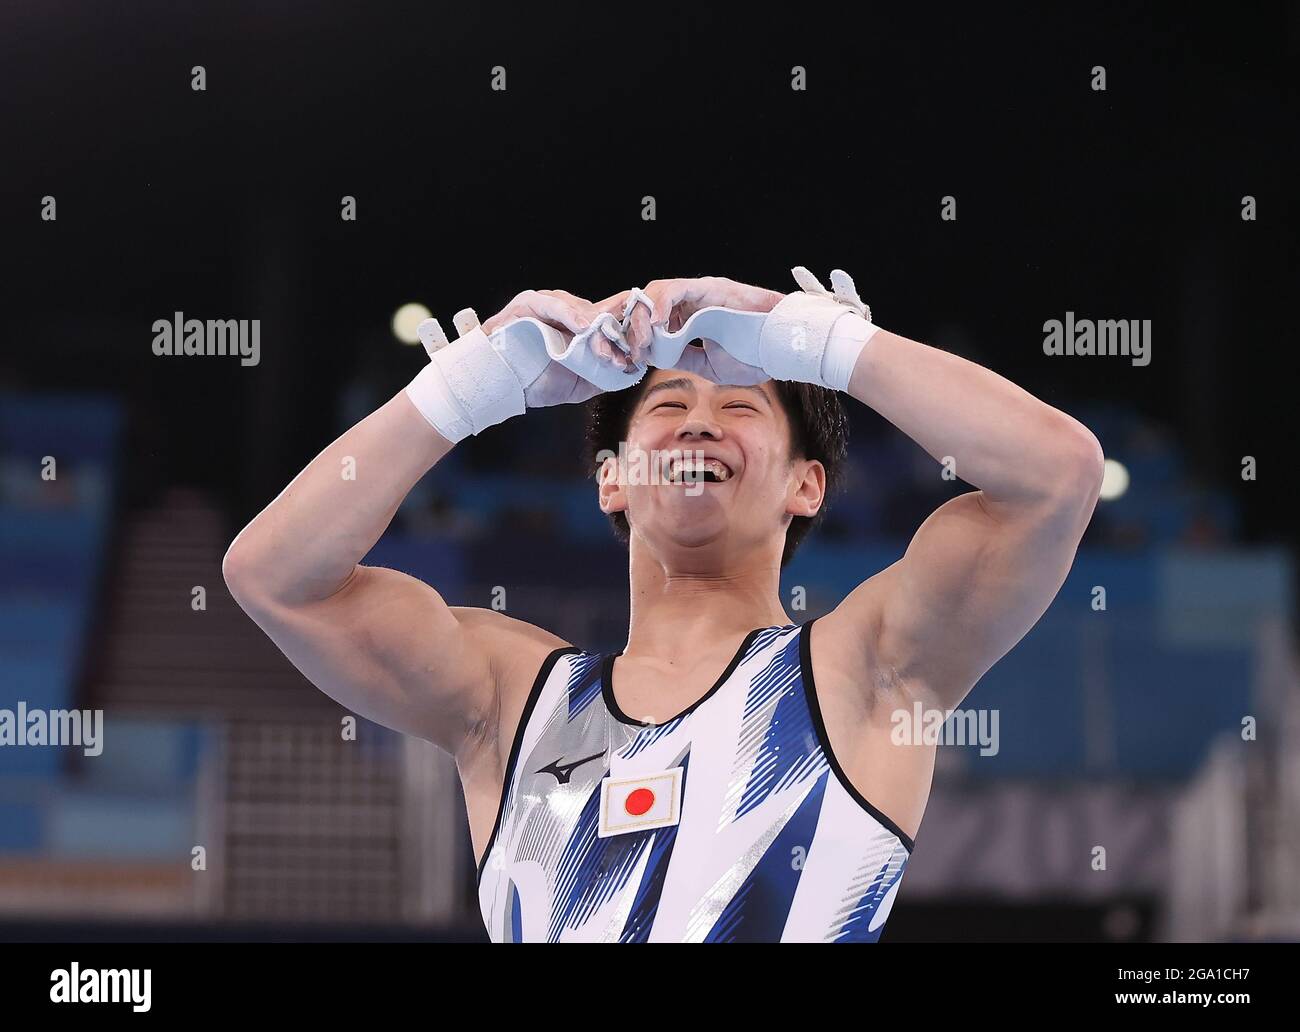 Tokio, Japan. Juli 2021. Hashimoto Daiki aus Japan feiert nach dem Allround-Finale der Männer im Kunstturnen bei den Olympischen Spielen 2020 in Tokio, Japan, 28. Juli 2021. Quelle: Xinhua/Alamy Live News Stockfoto